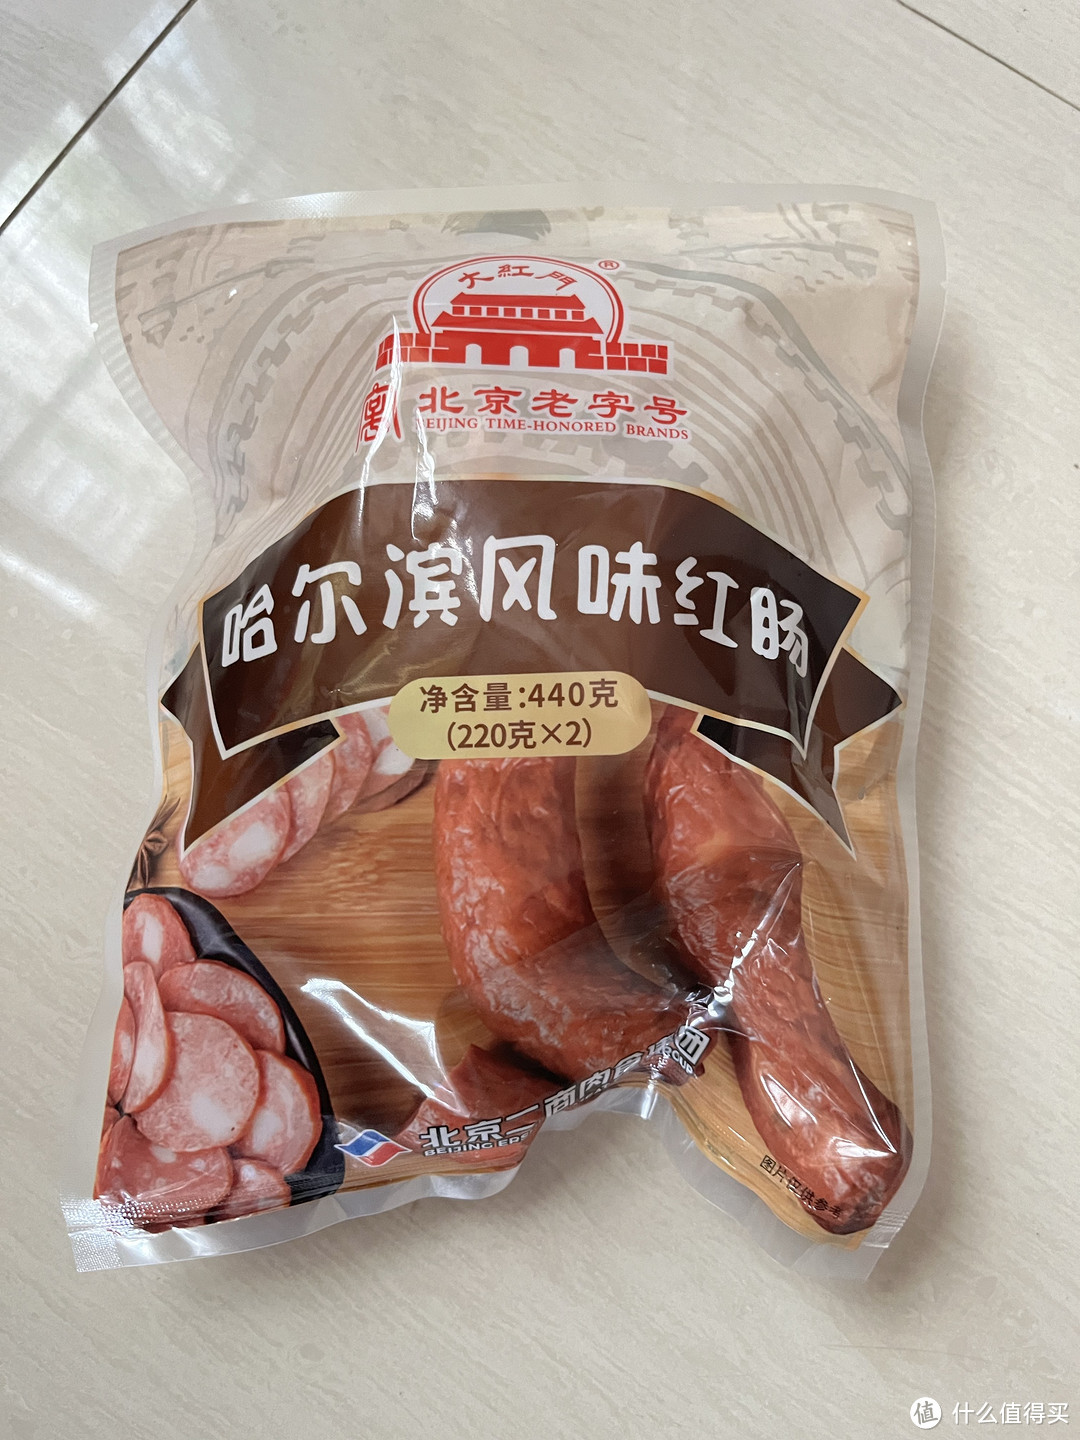 品味传统，享受美味——大红门哈尔滨风味红肠，10.63元一件，比买猪肉还便宜。